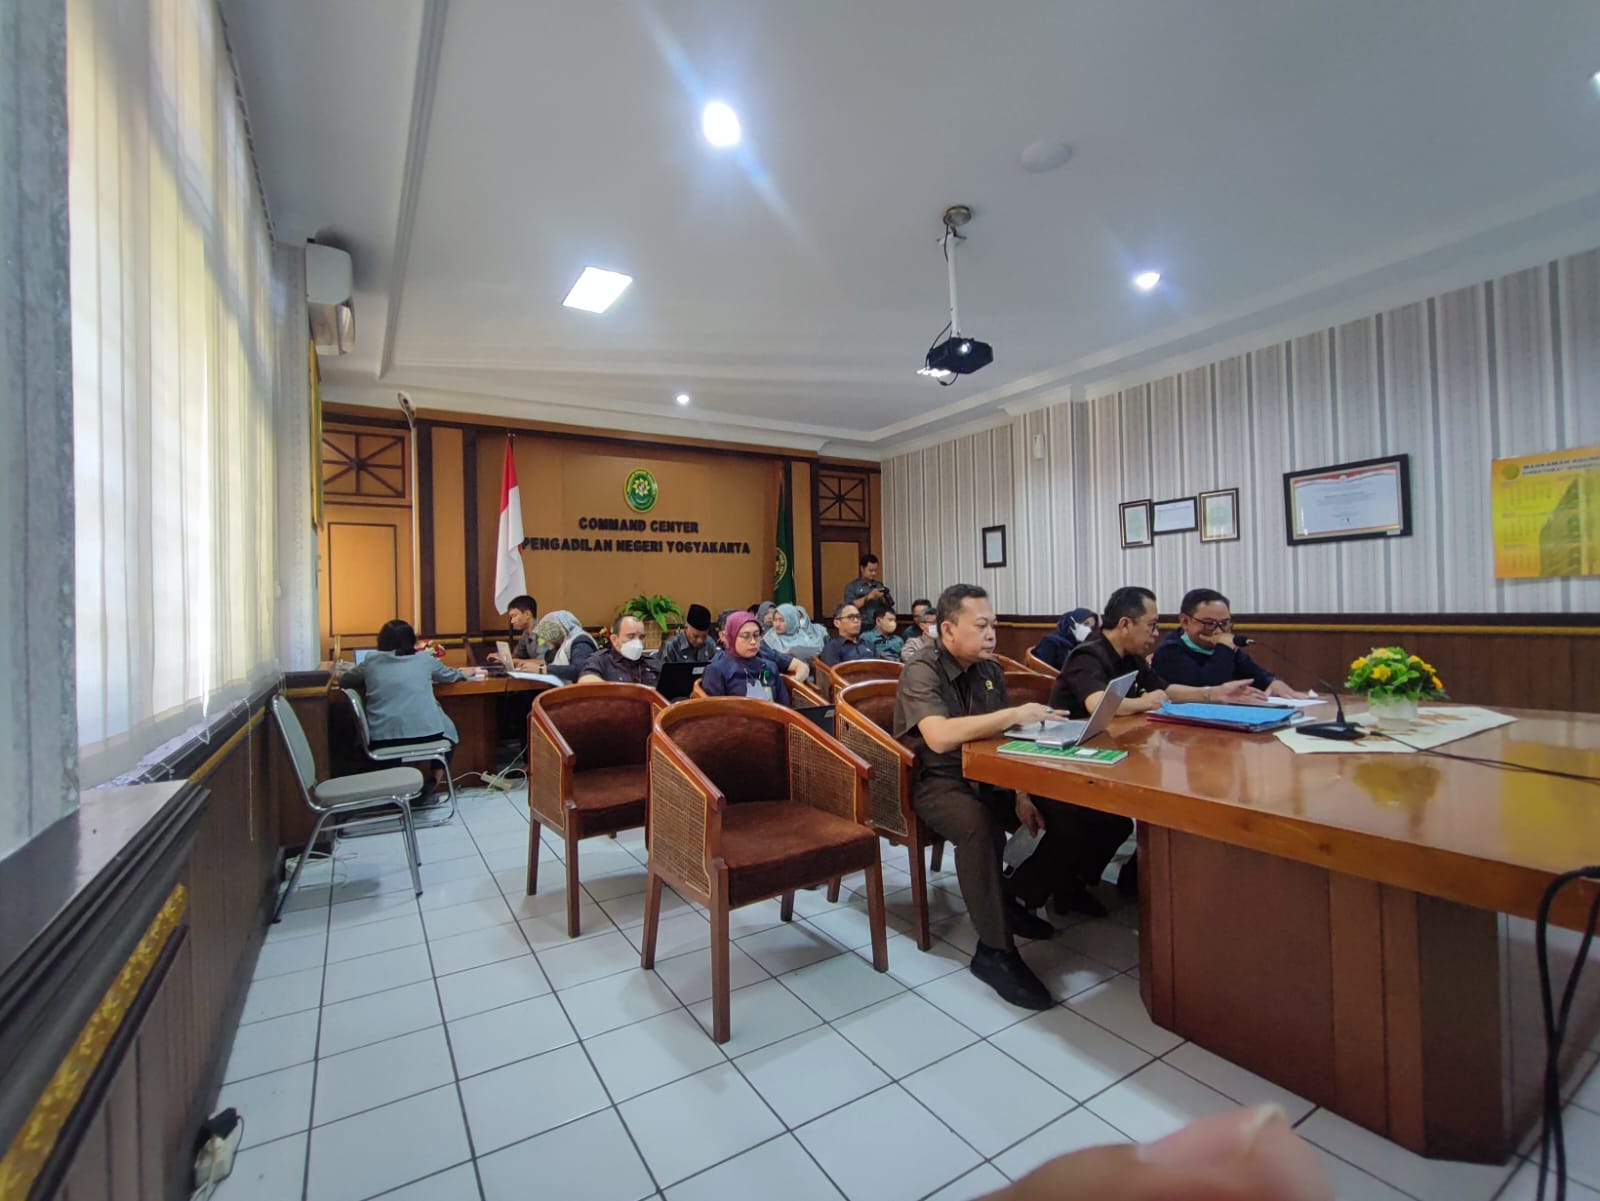 Pengadilan Negeri Yogyakarta Mengikuti Sosialisasi Pembaruan Aplikasi e-Berpadu versi 3.0.0 Hari Pertama